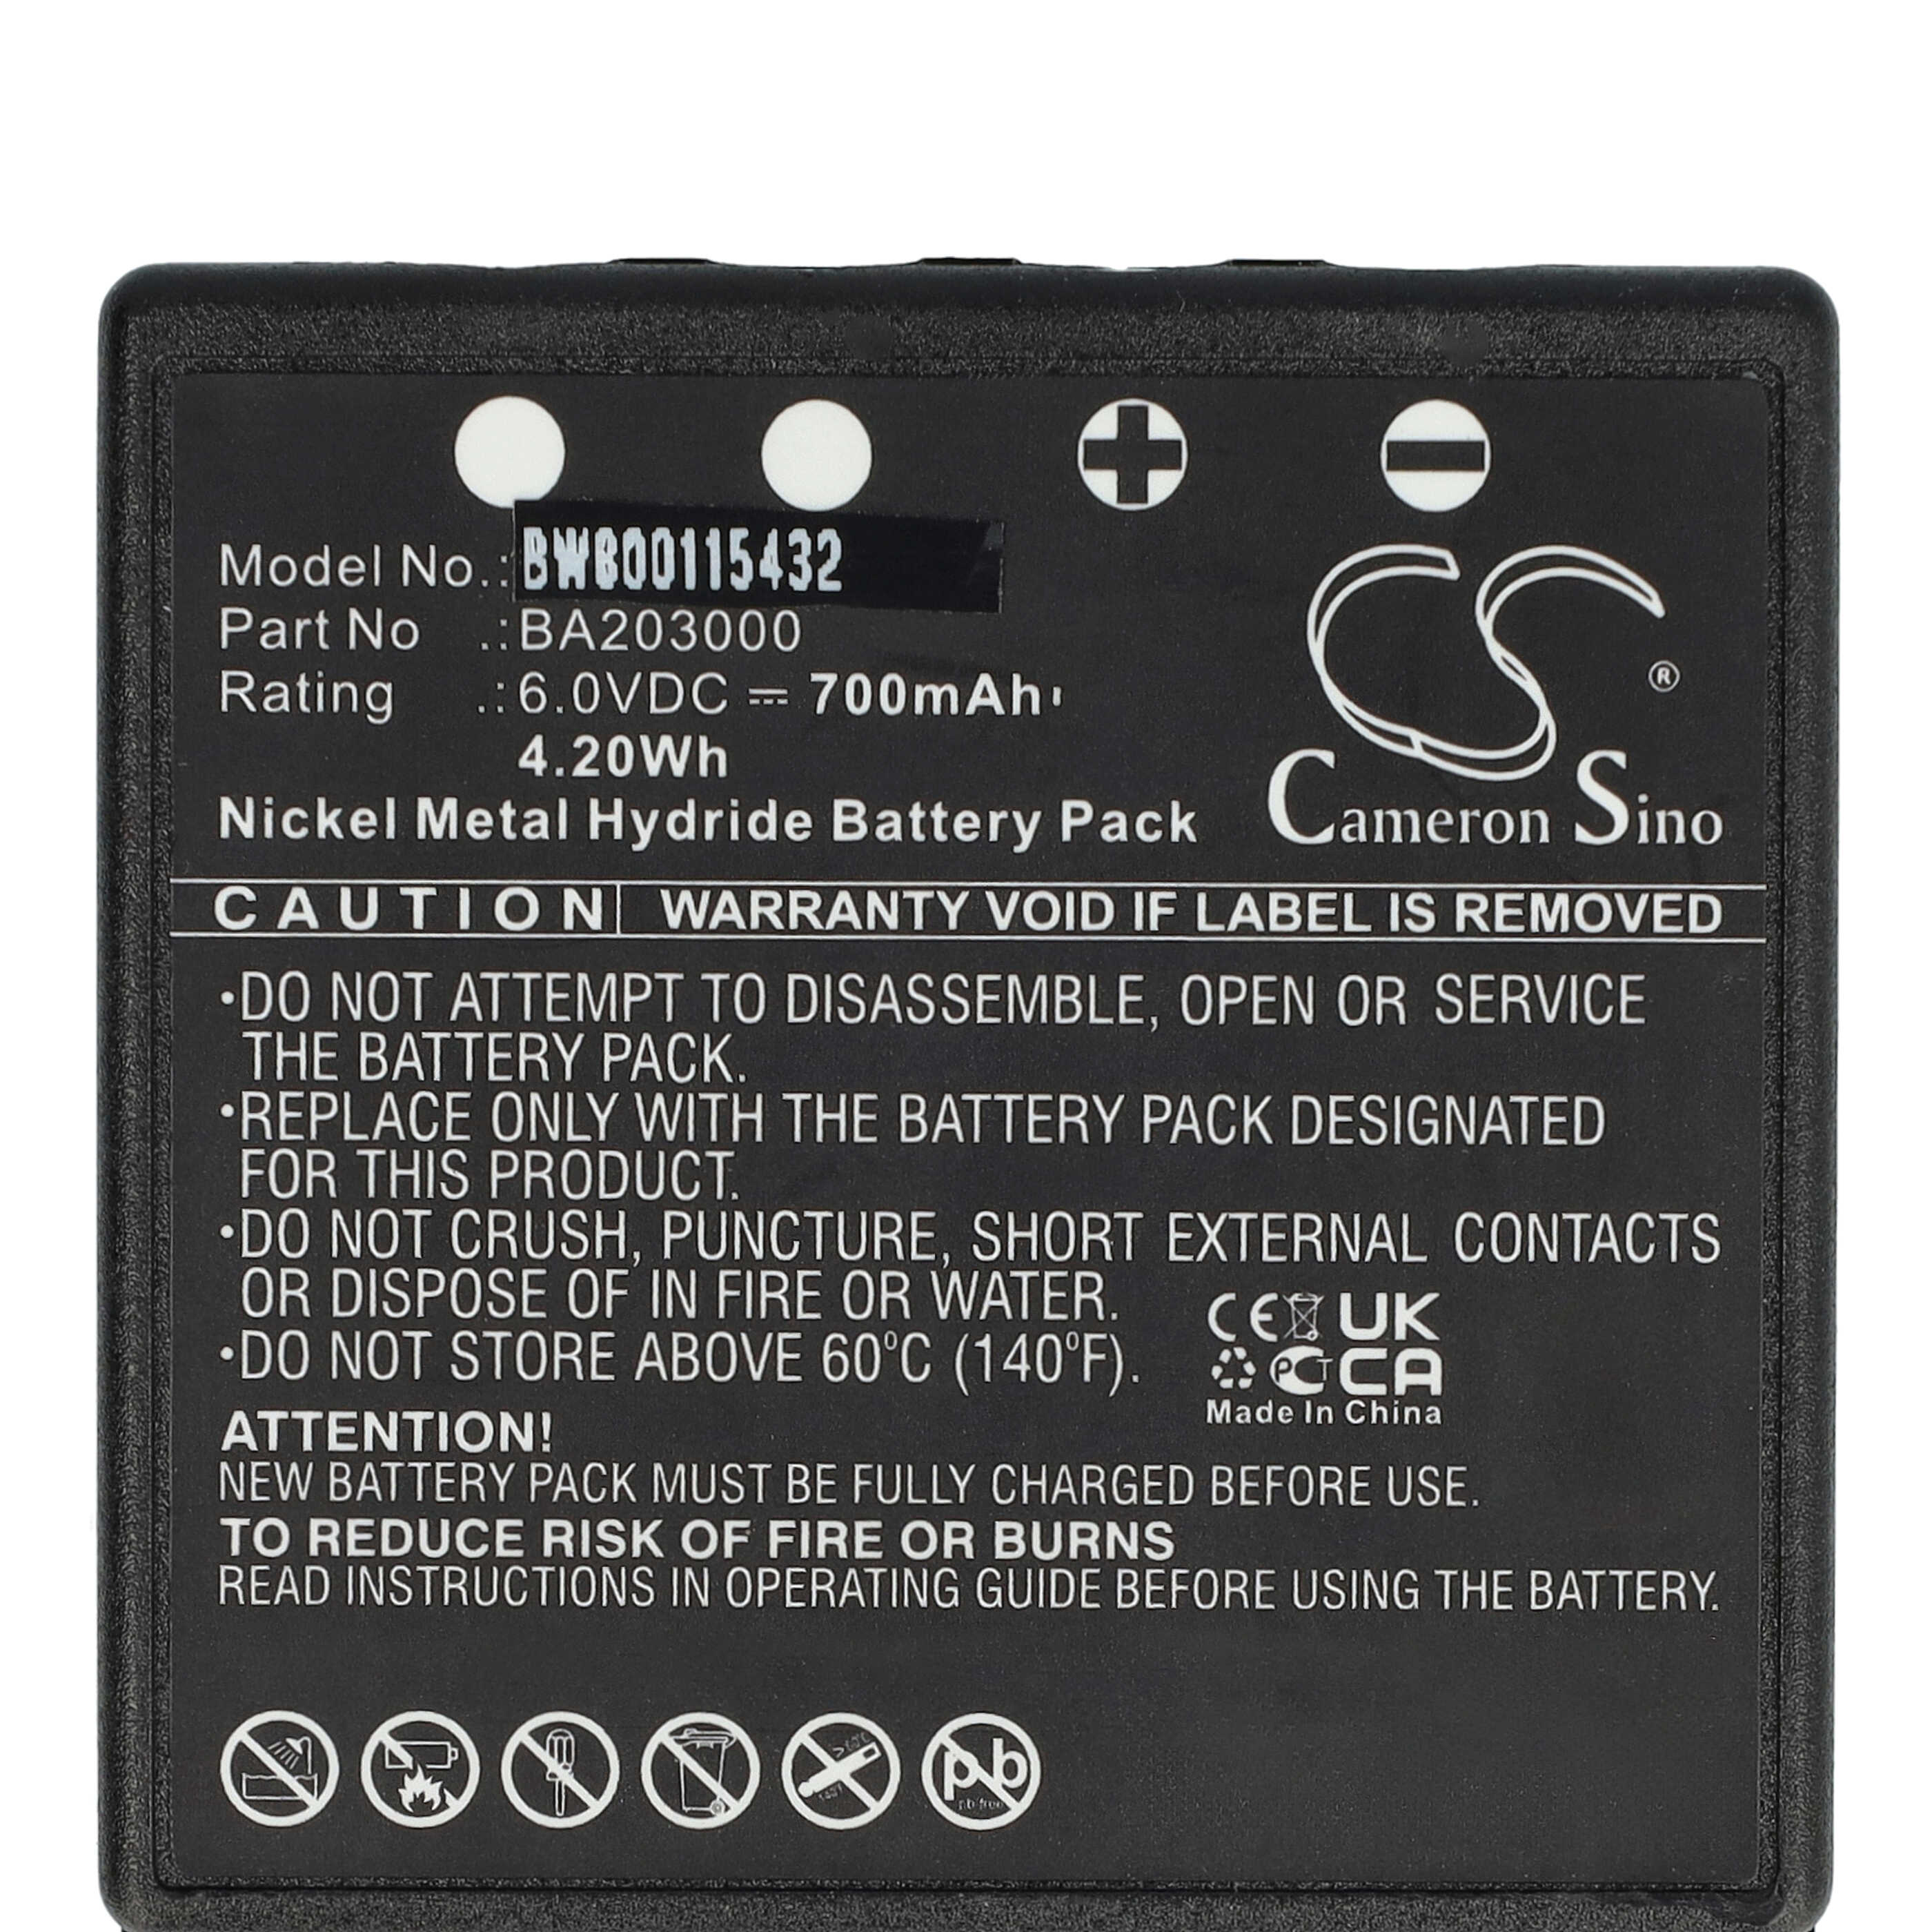 Batterie remplace HBC BA203000, BA205030, 005-01-00615 pour télécomande industrielle - 700mAh 6V NiMH